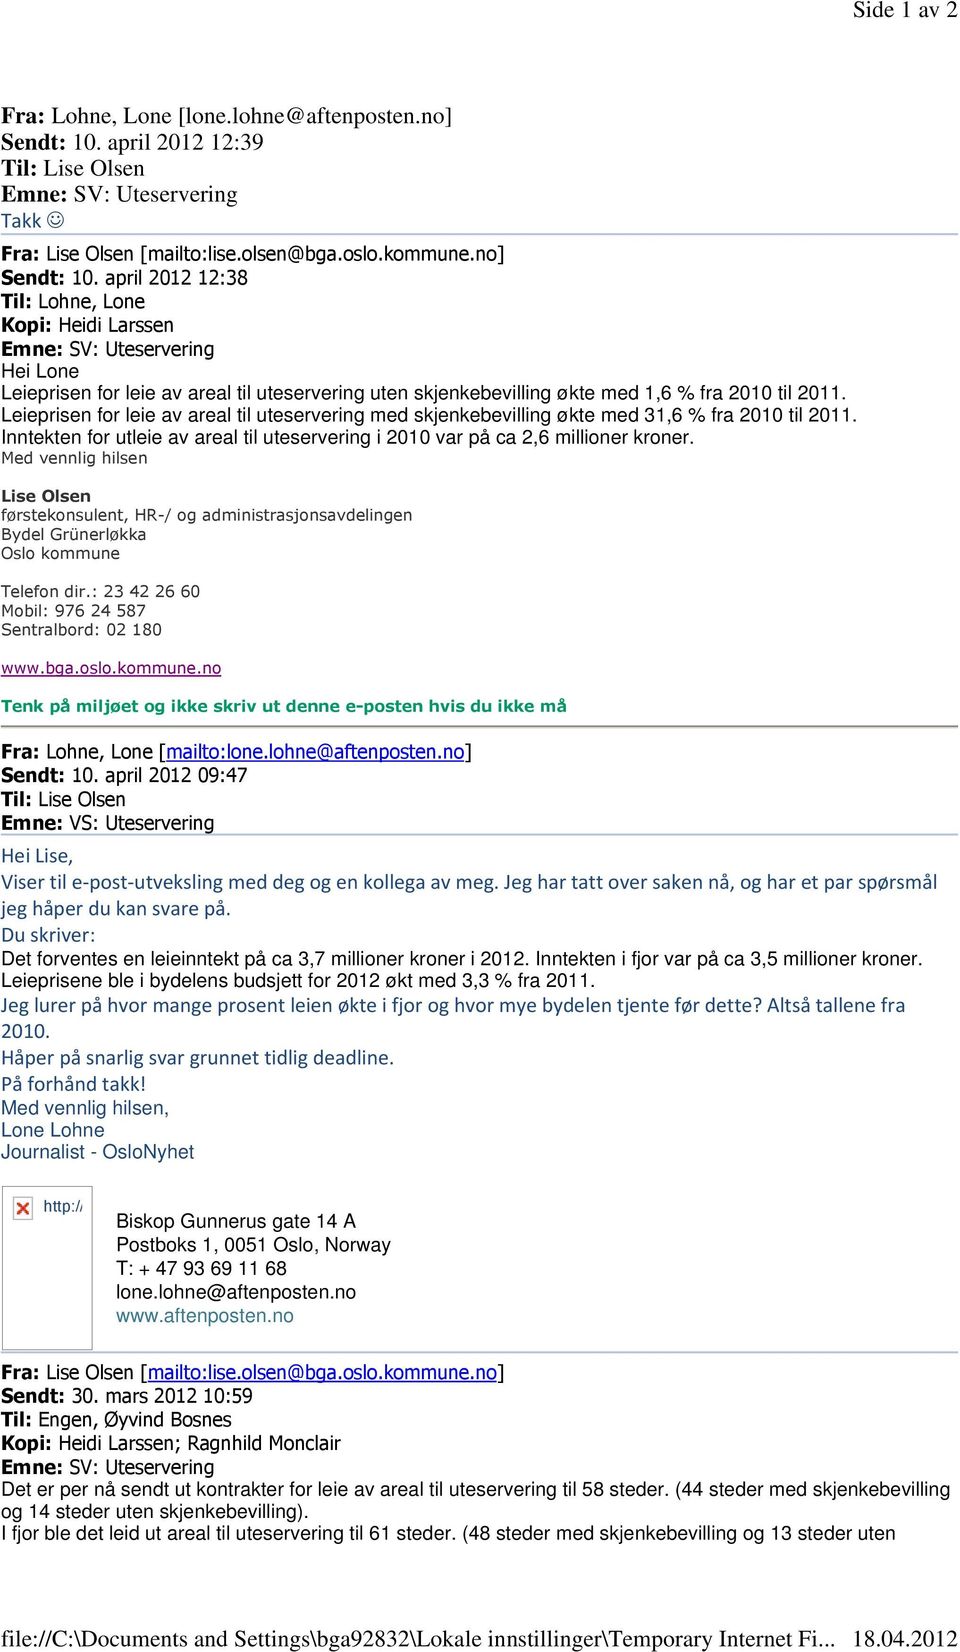 april 2012 12:38 Til: Lohne, Lone Kopi: Heidi Larssen Hei Lone Leieprisen for leie av areal til uteservering uten skjenkebevilling økte med 1,6 % fra 2010 til 2011.